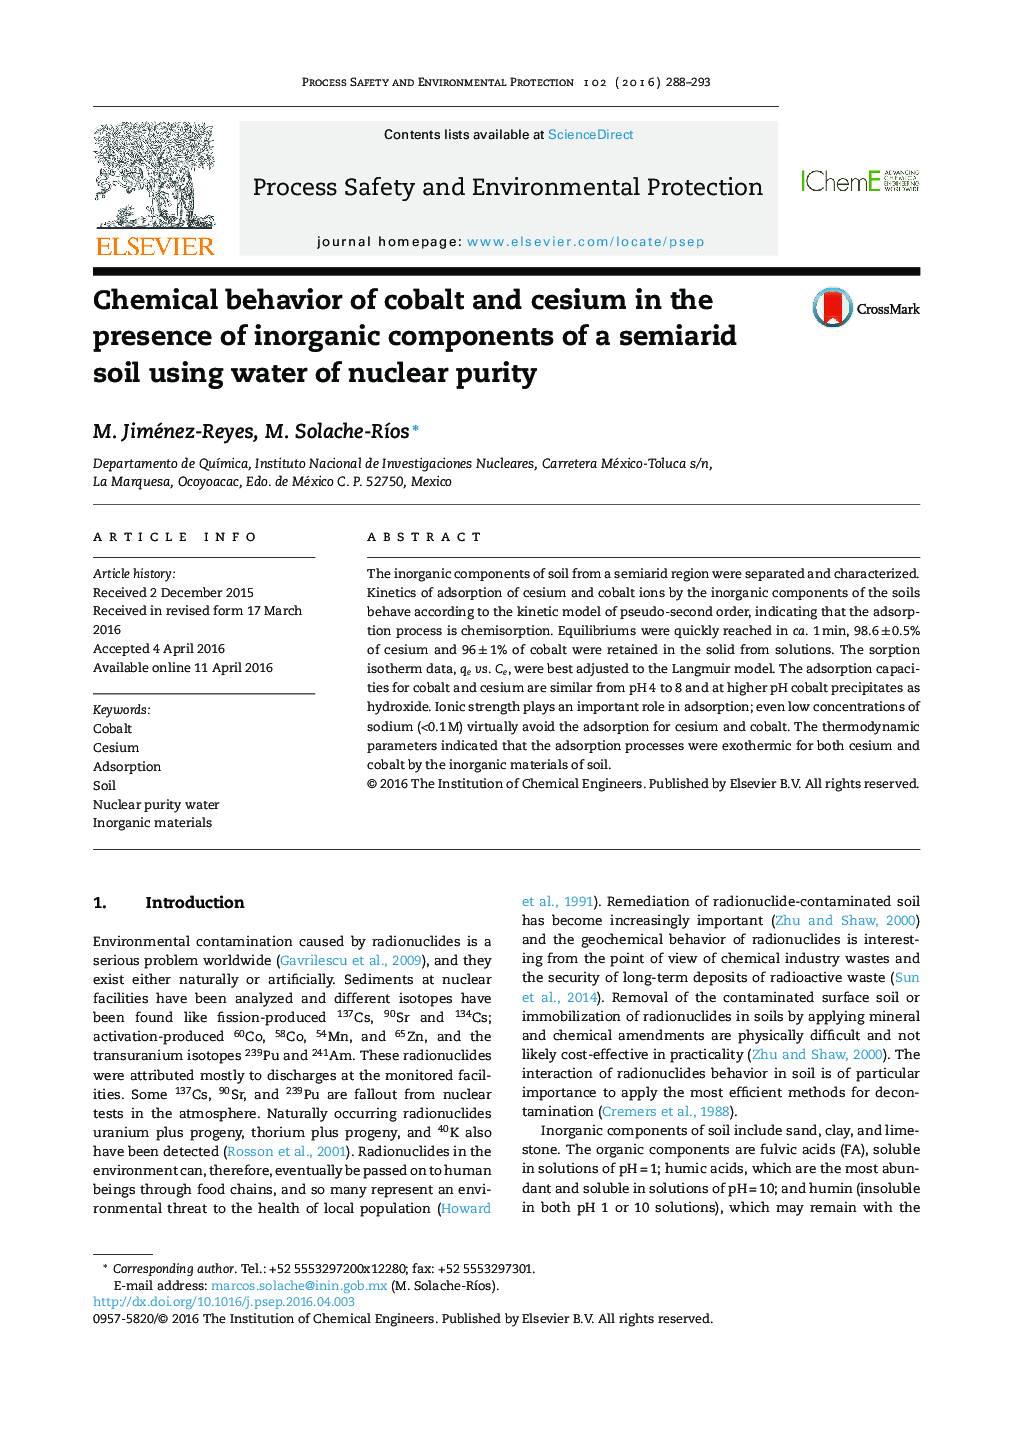 رفتار شیمیایی کبالت و سزیم در حضور اجزای معدنی خاک نیمه خشک با استفاده از آب با خلوص هسته ای